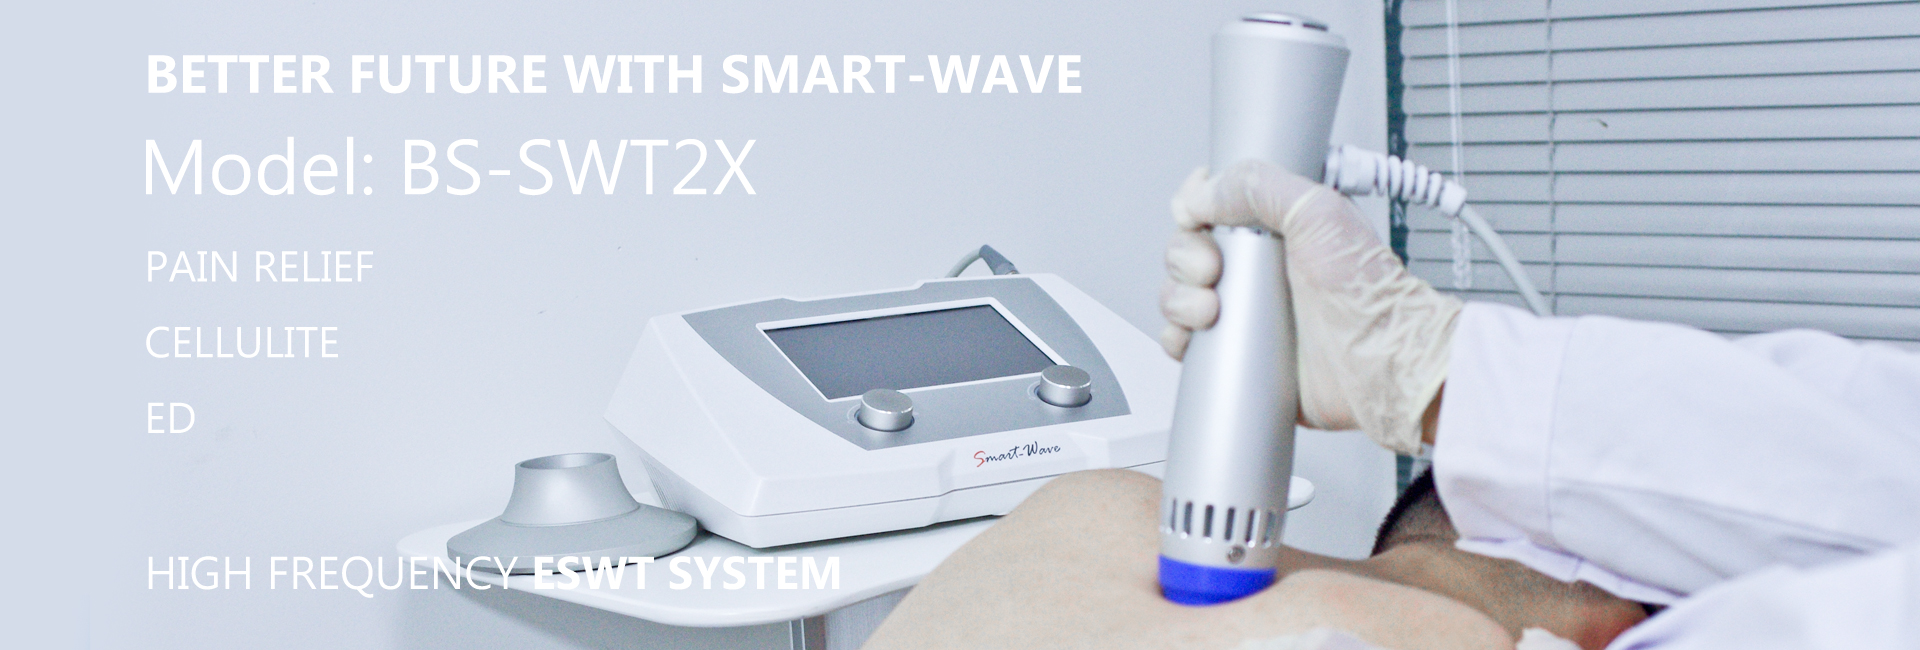 Smartwave_BS-SWT2X